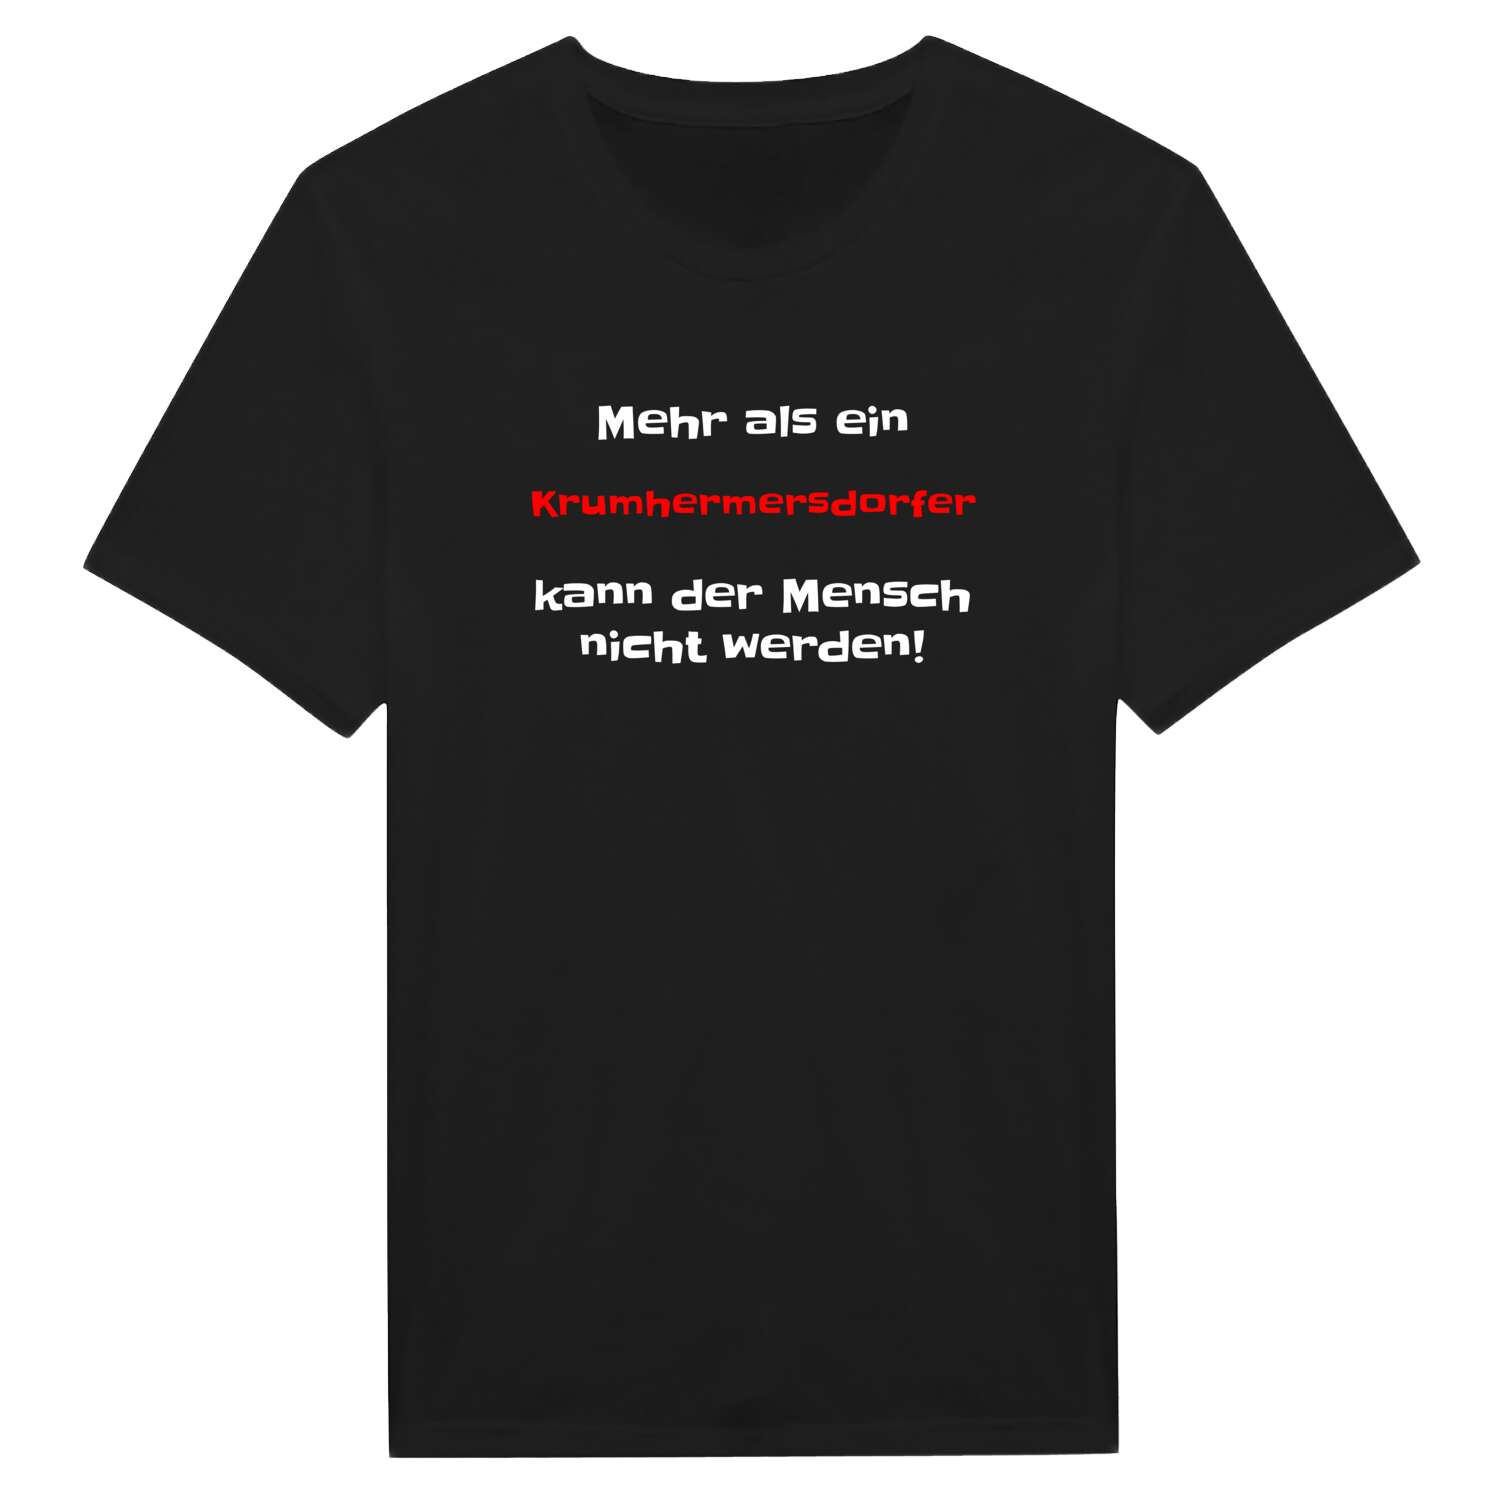 Krumhermersdorf T-Shirt »Mehr als ein«